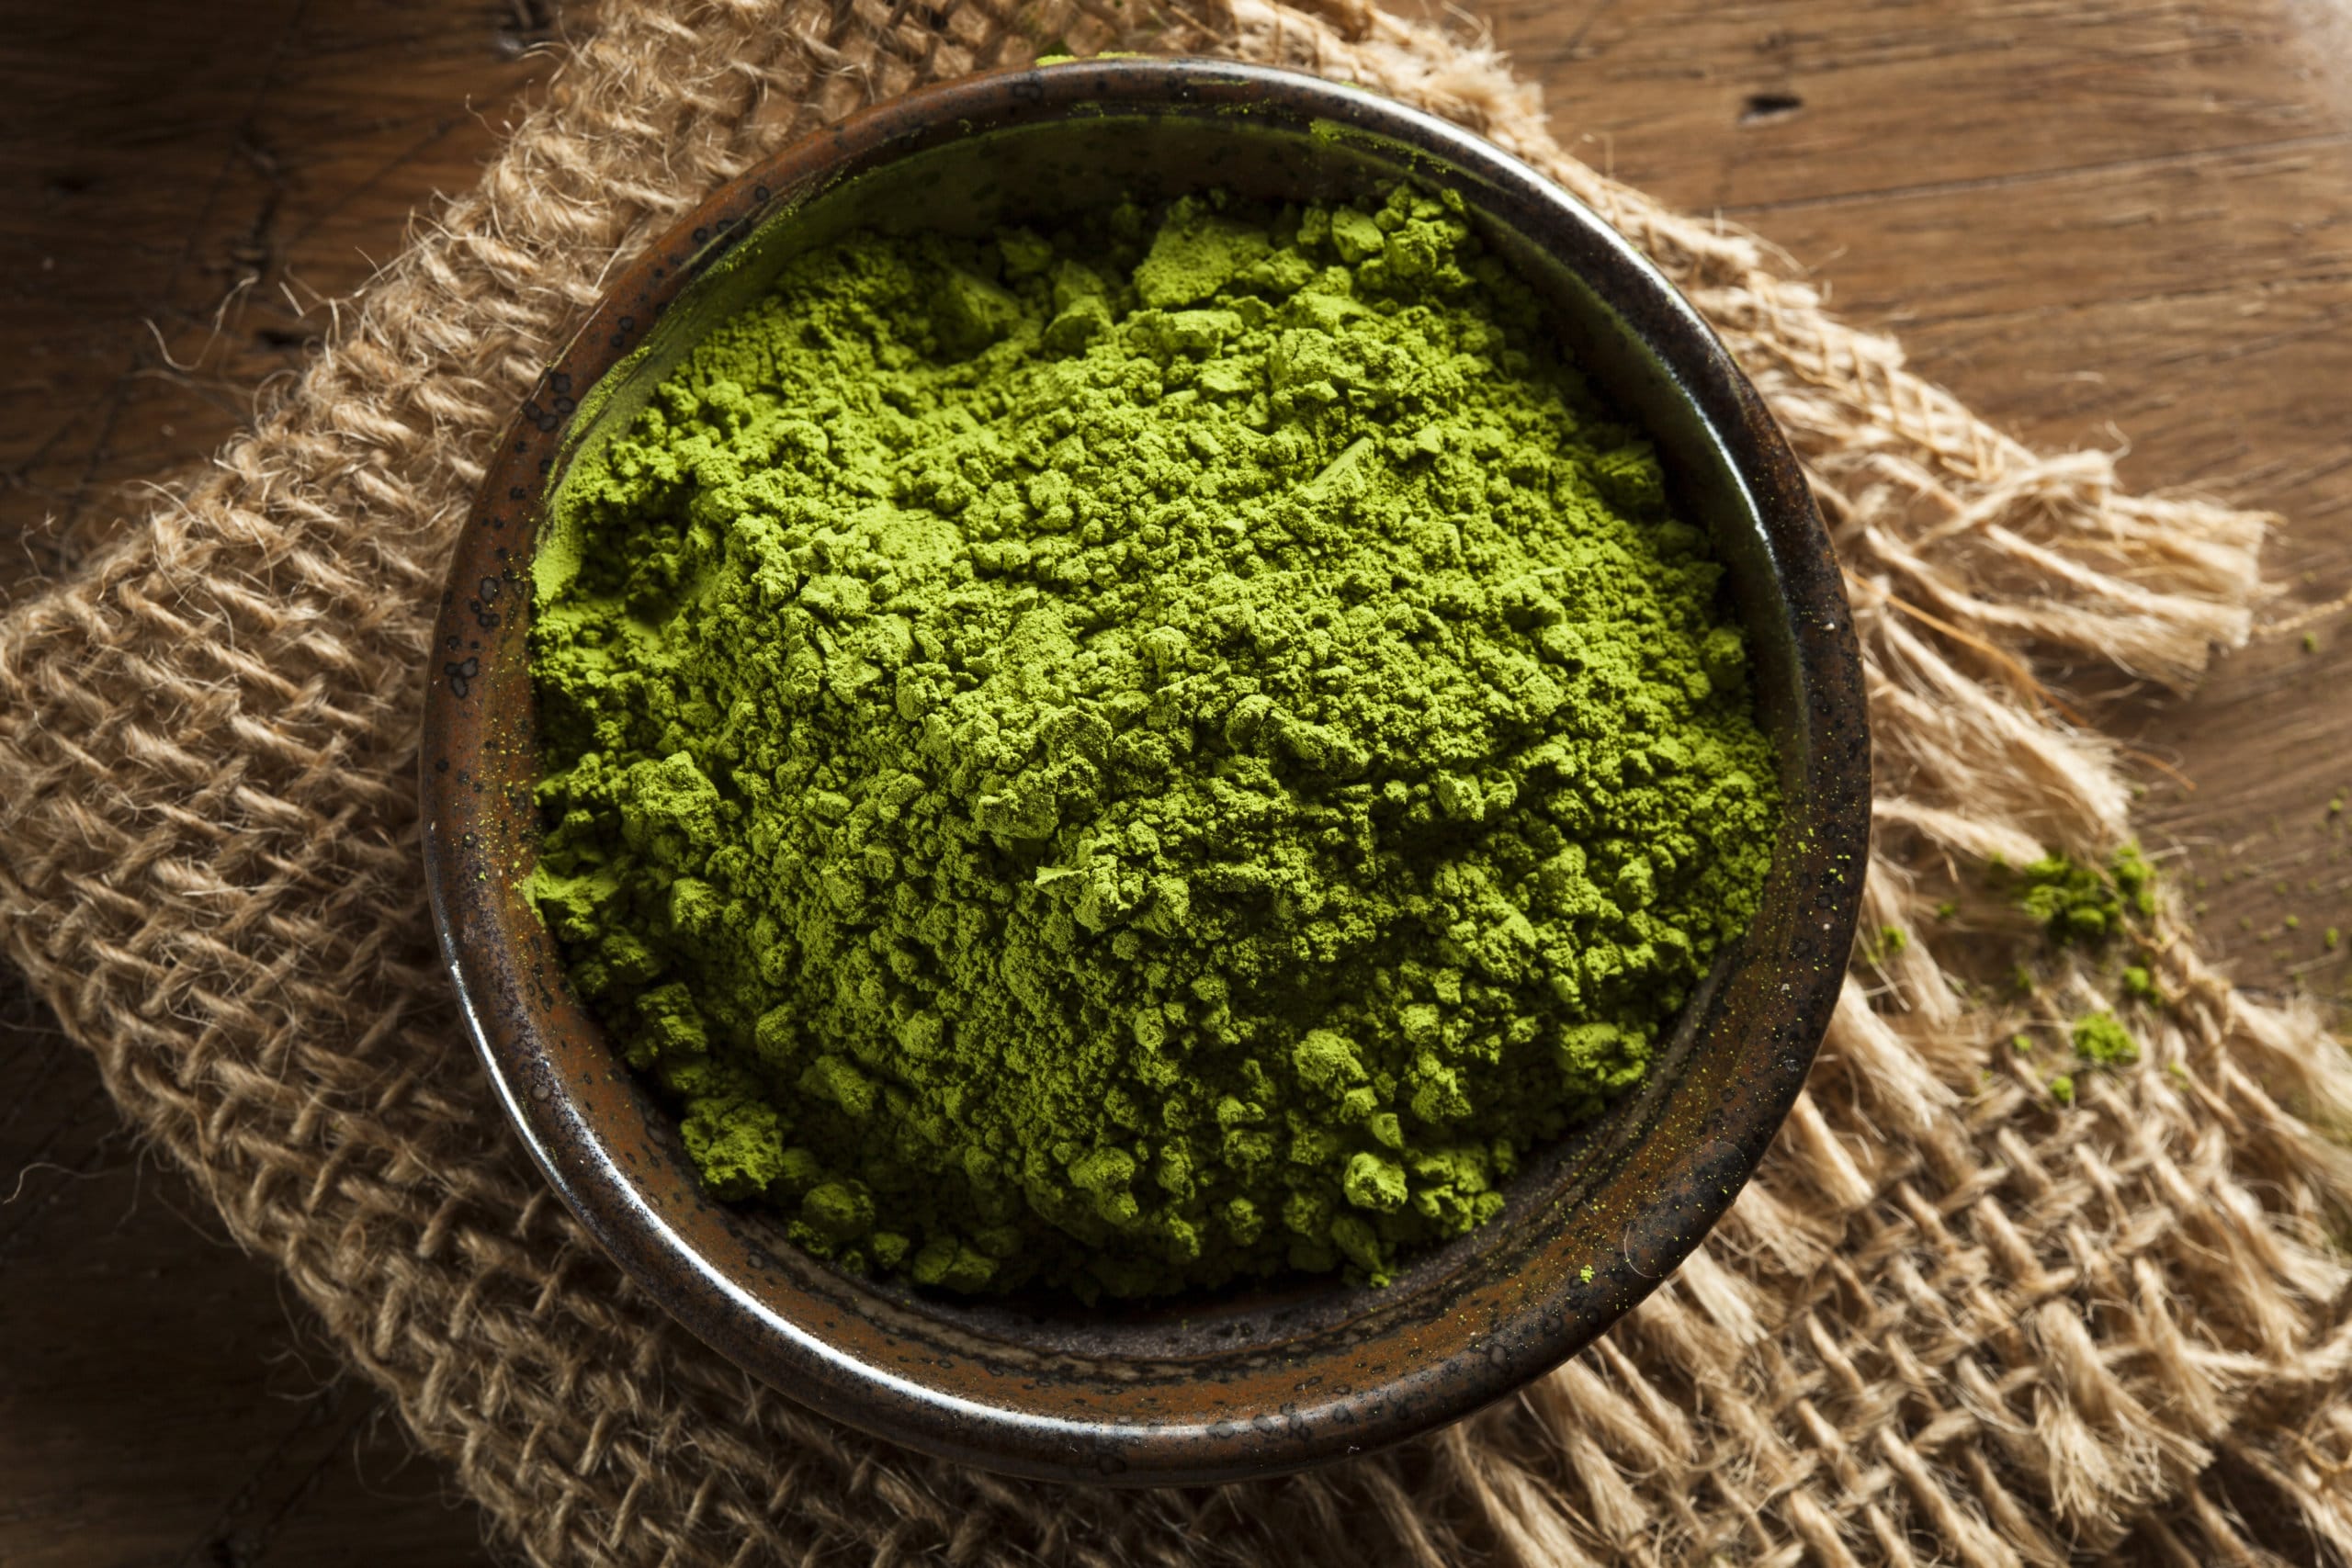 Green Vein Kratom Powder & Capsules for Sale Online - Kratom-k